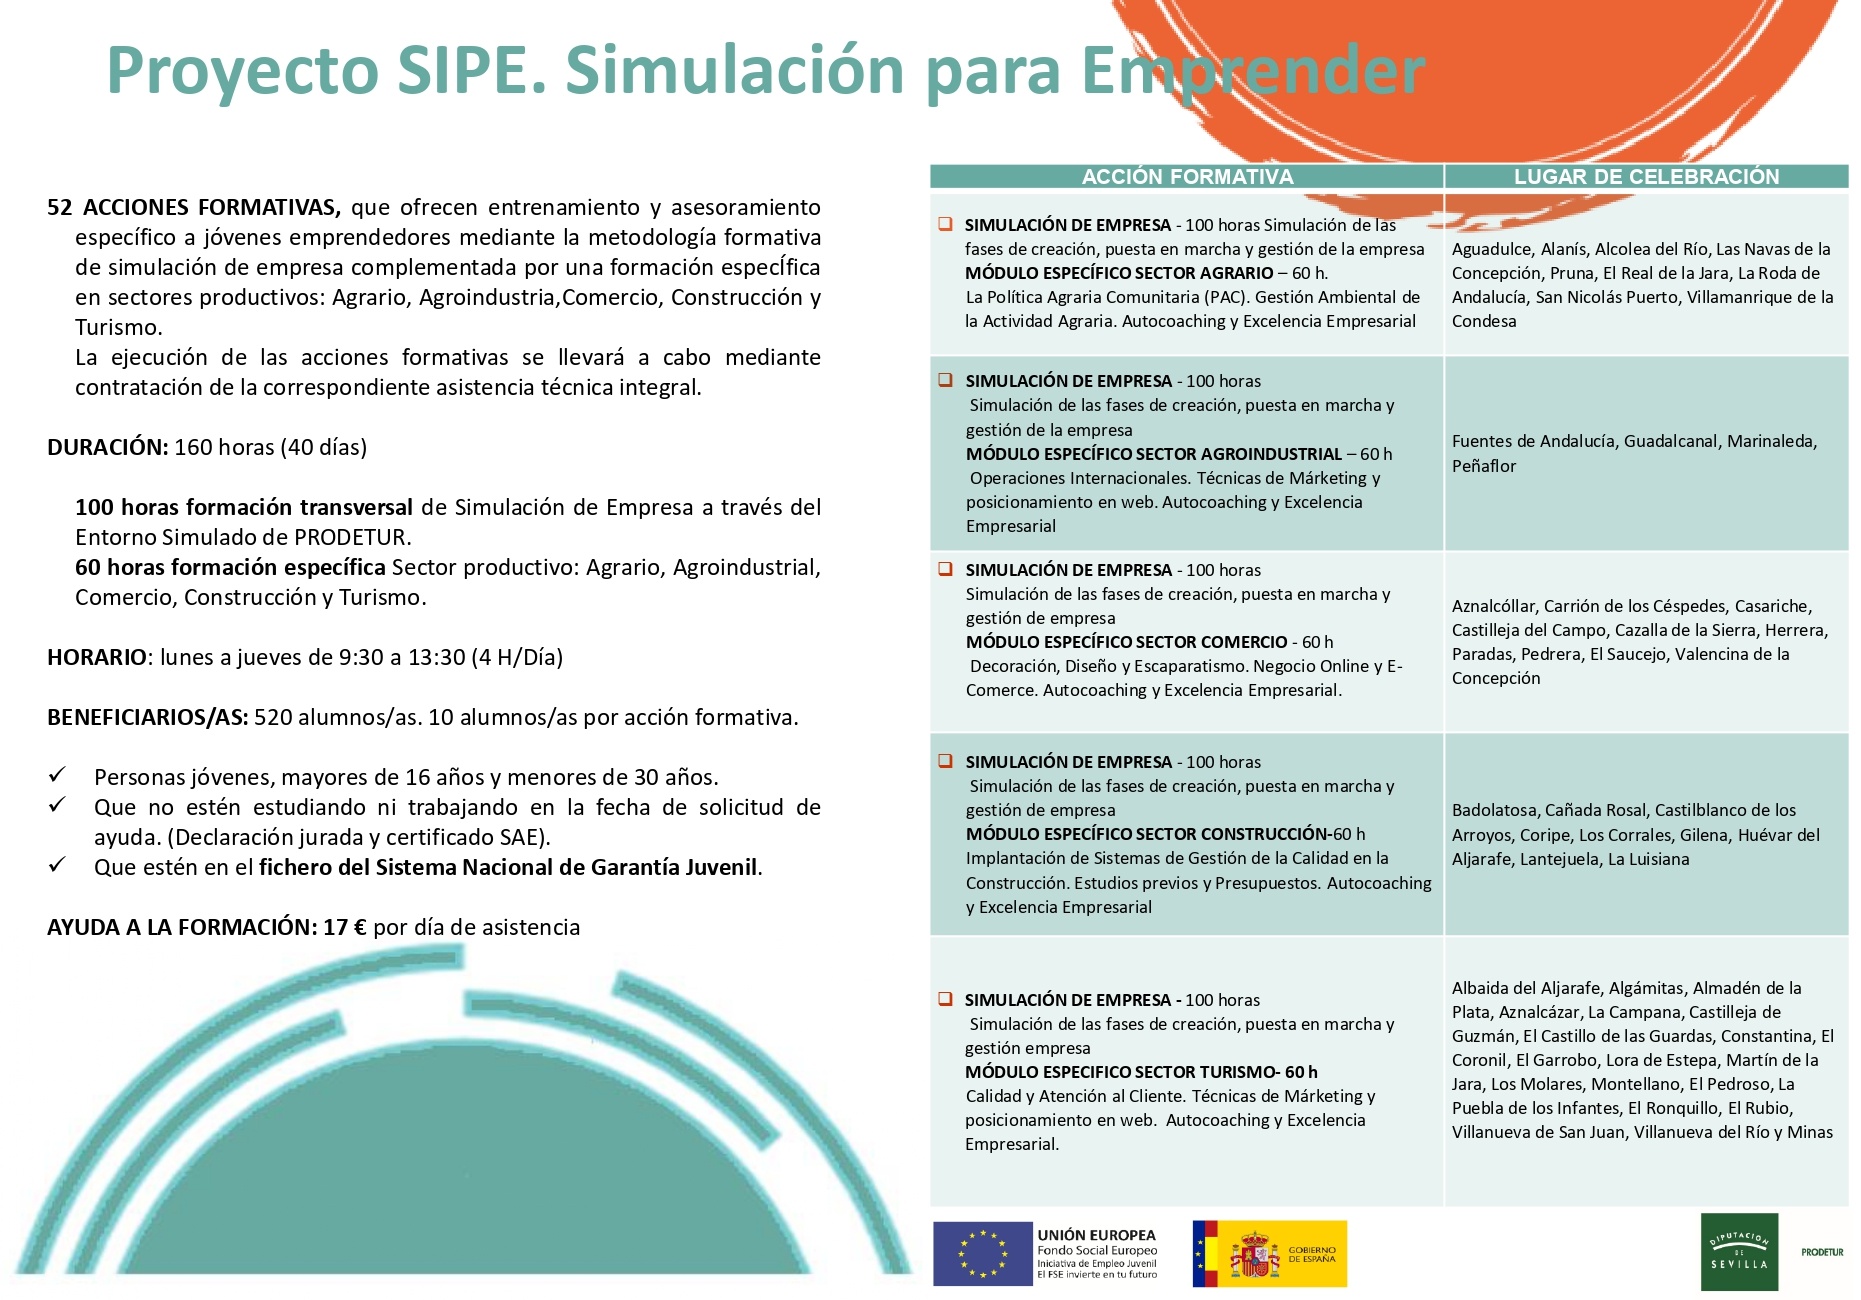 2.-Diptico SIPE. Simulacion para Emprender (1)2020-1-2_page-0002